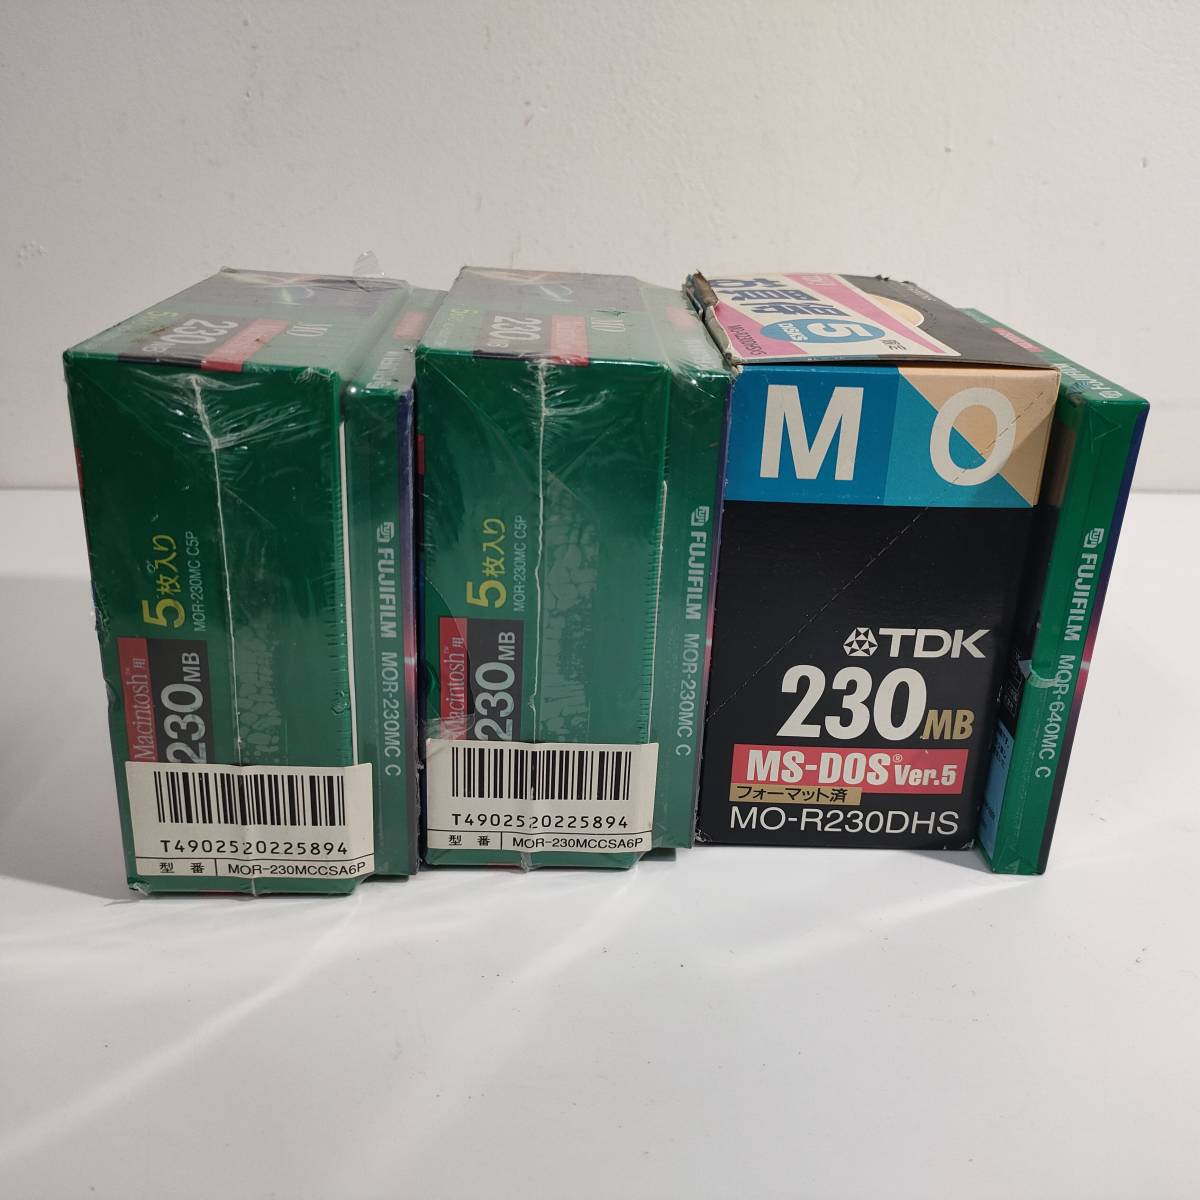 135[ не использовался товар ] дискета FUJIFILM Macintosh для 230MB MO 13 листов + TDK 230MB MS-DOS ver.5 MO-R230DHS 5pack продажа комплектом 